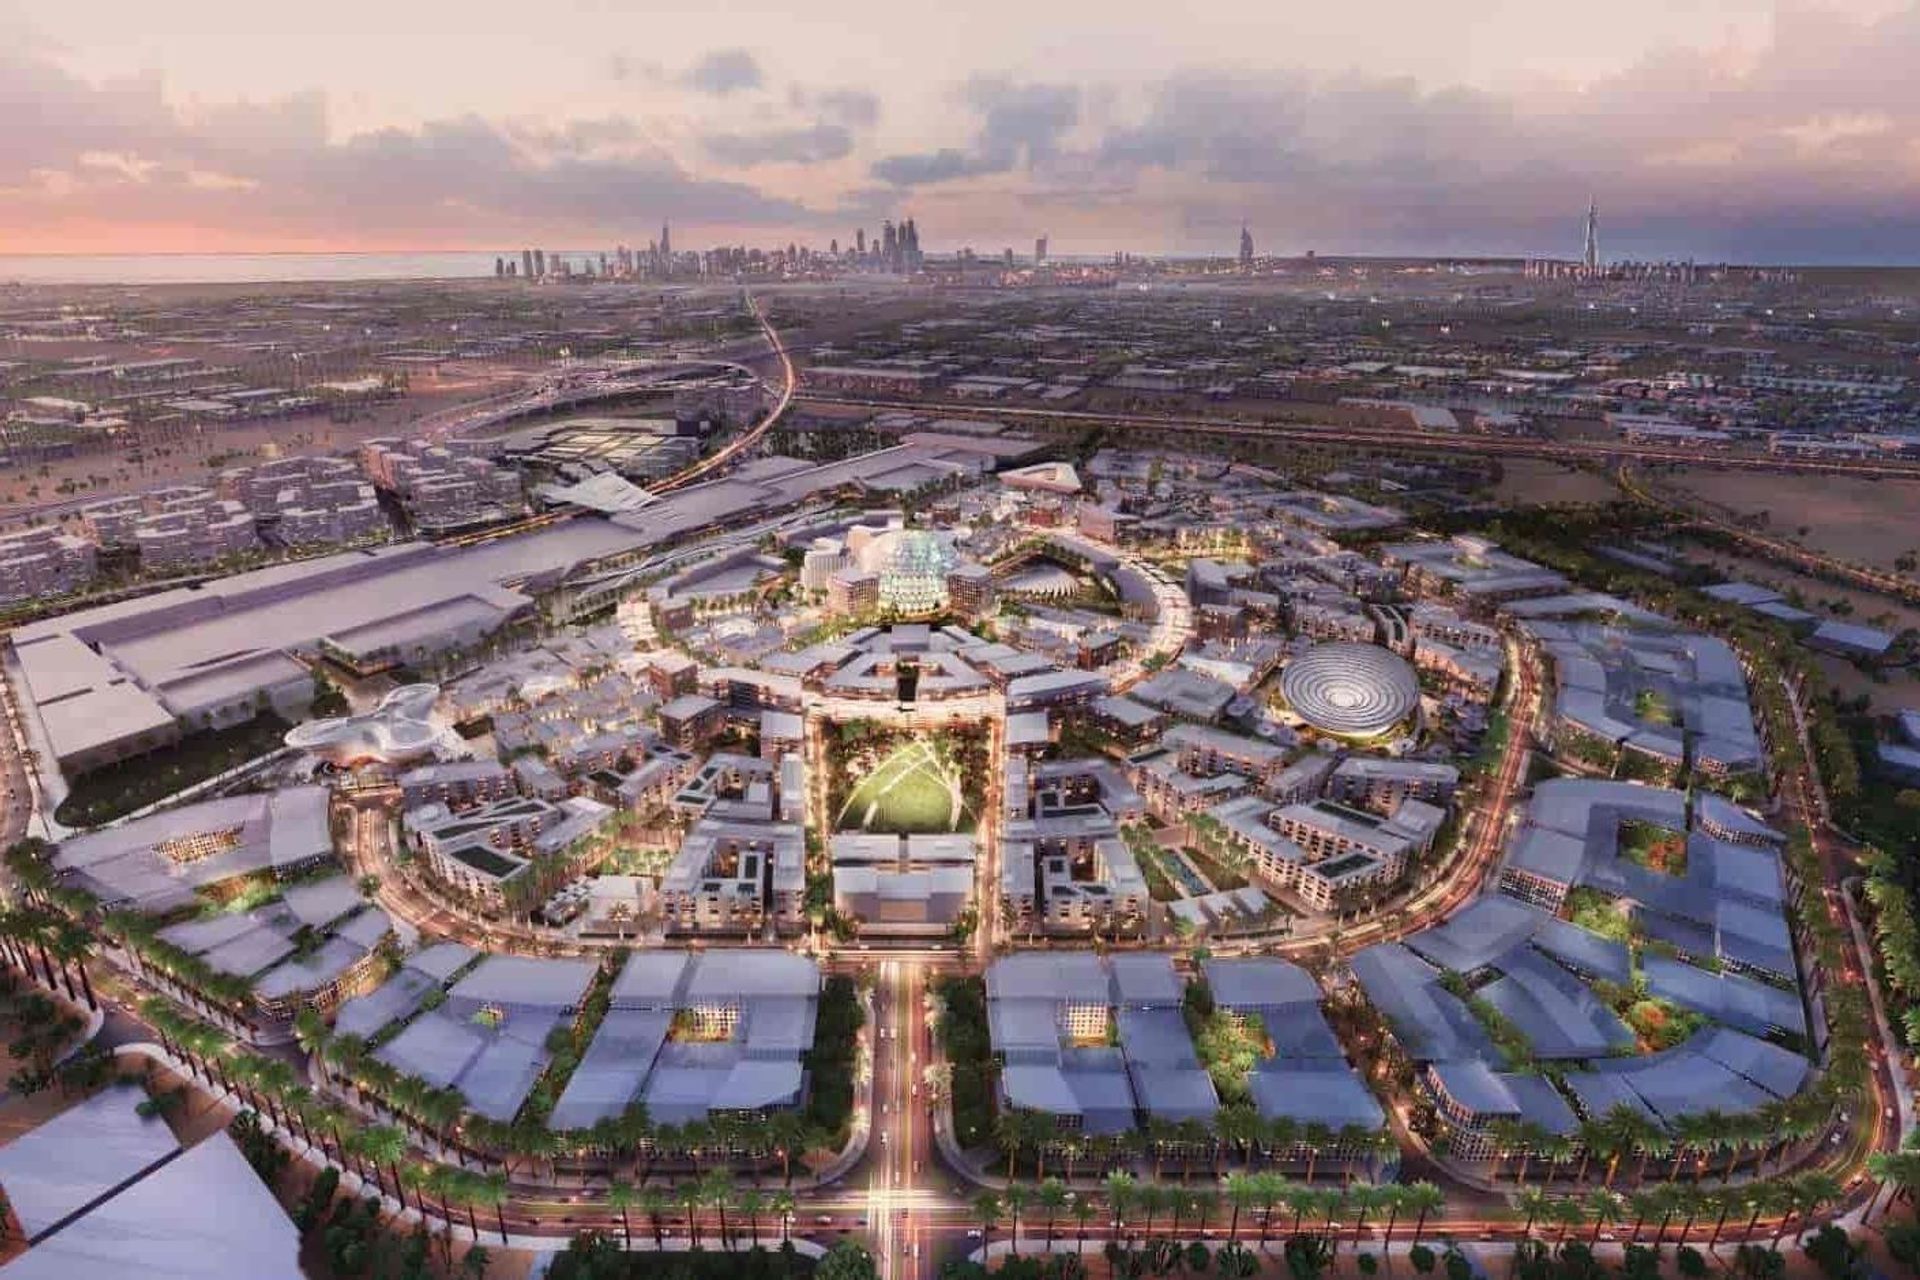 L'expo 2020 Dubai è stato inaugurato il primo ottobre 2021